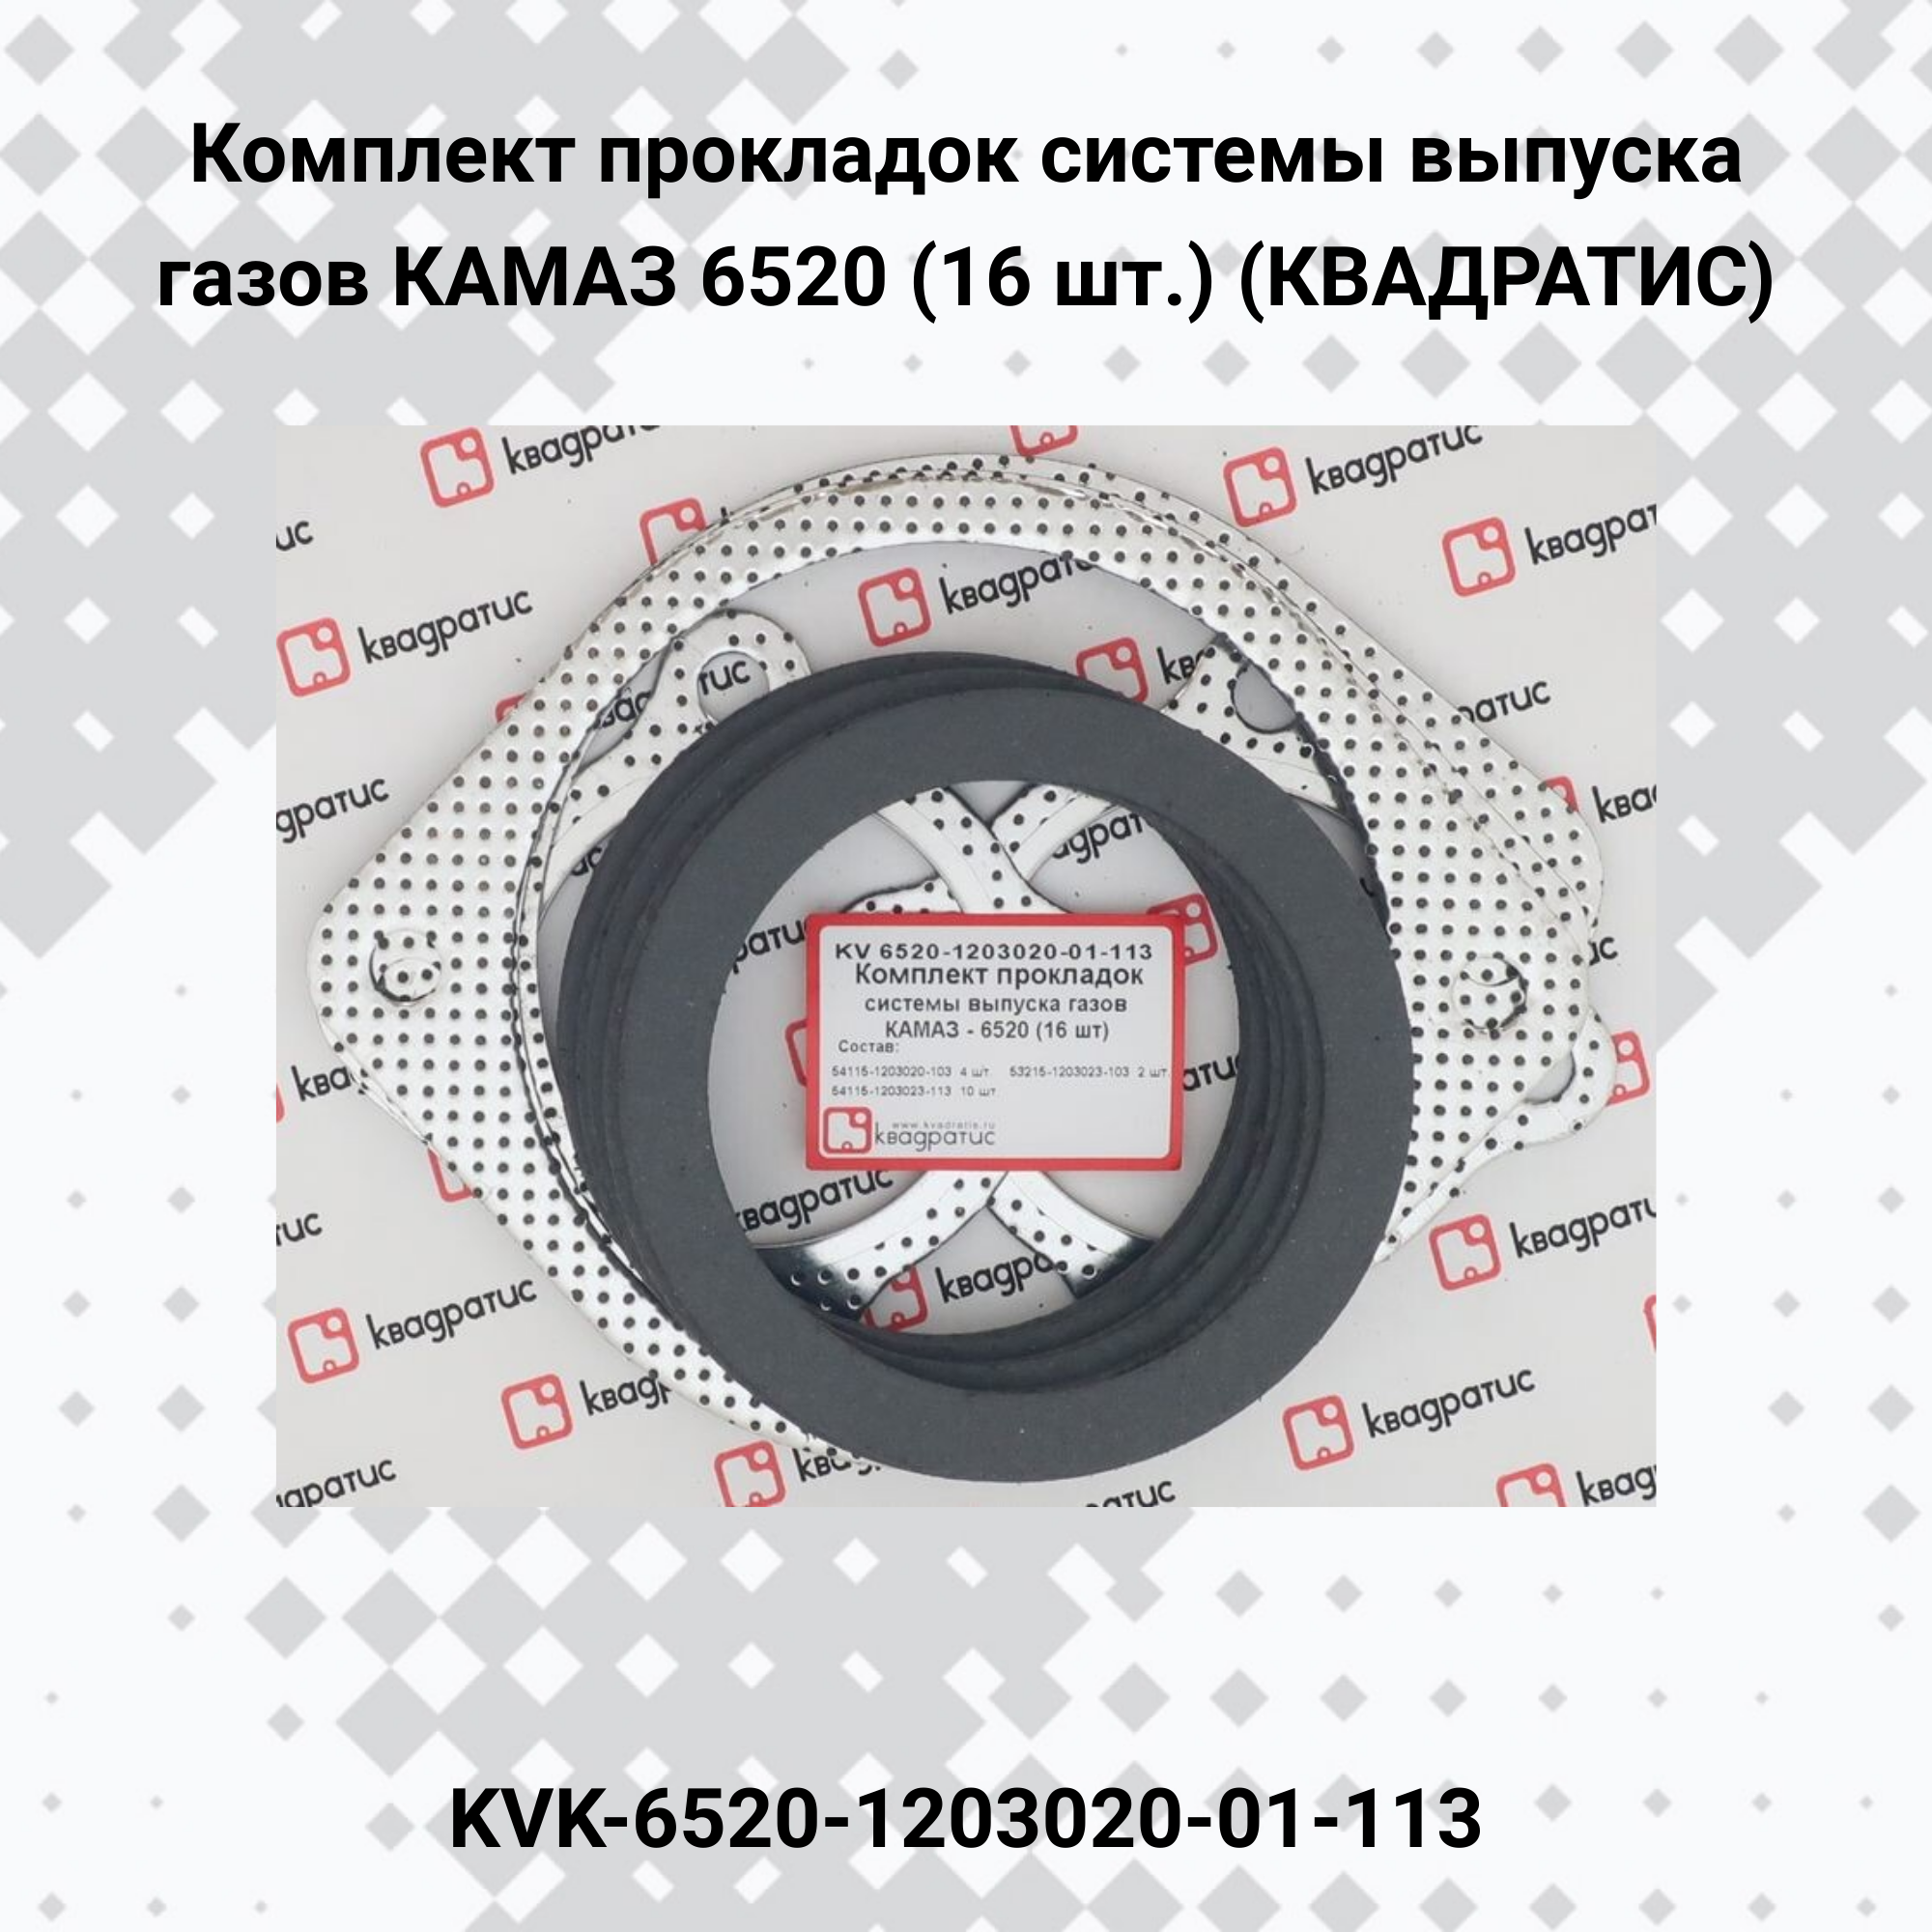 Комплект прокладок системы выпуска газов КАМАЗ 6520 (16 шт.) (Квадратис)